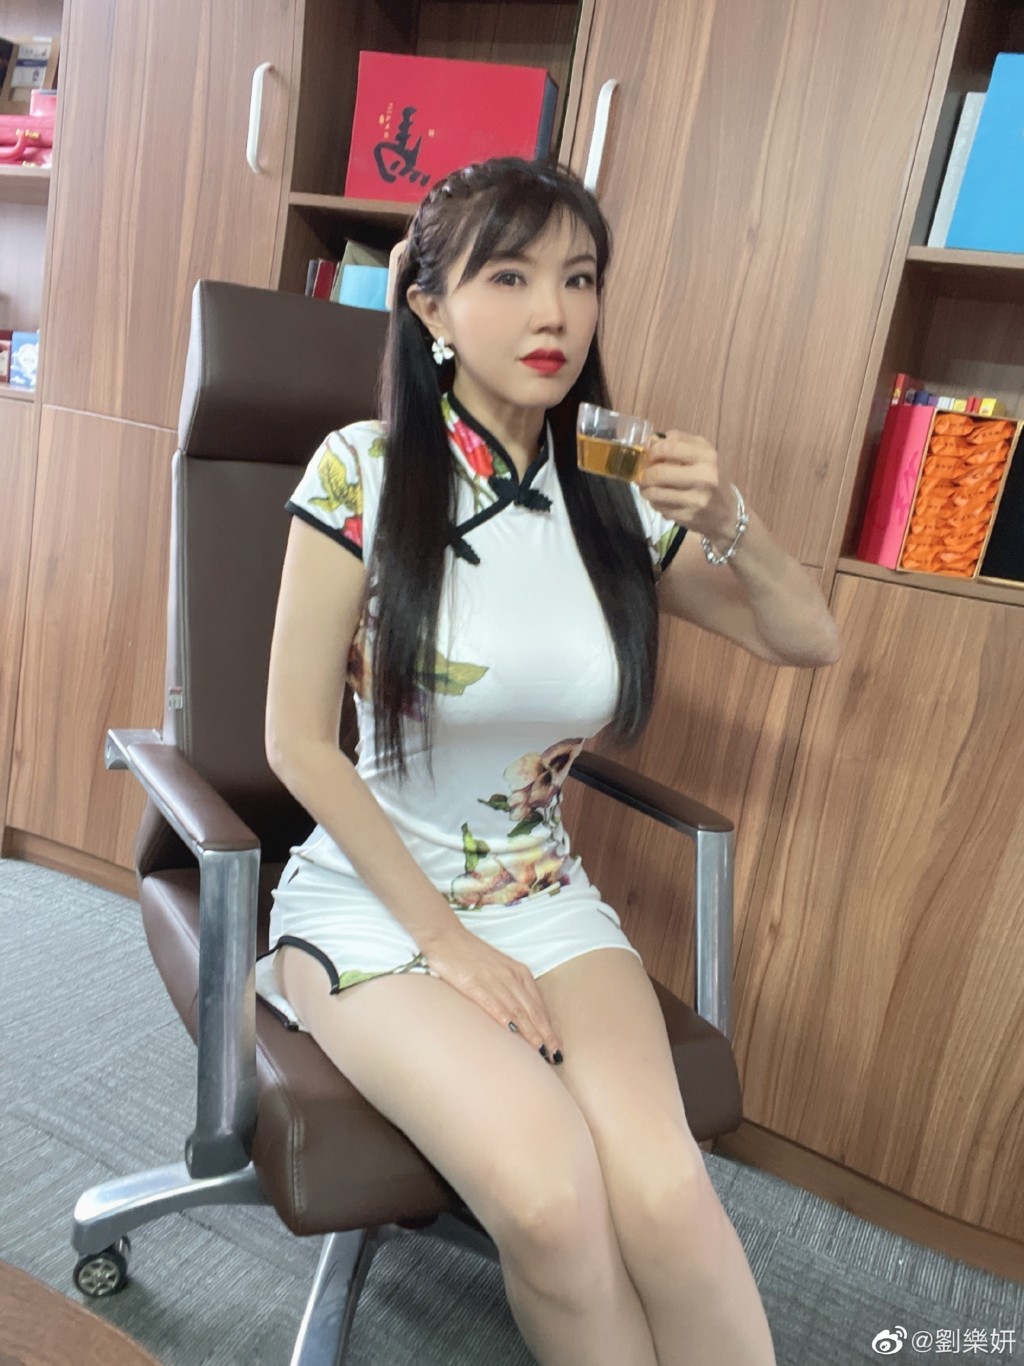 劉樂妍赴中國發展GG了　她坐路邊大哭：怎麼辦